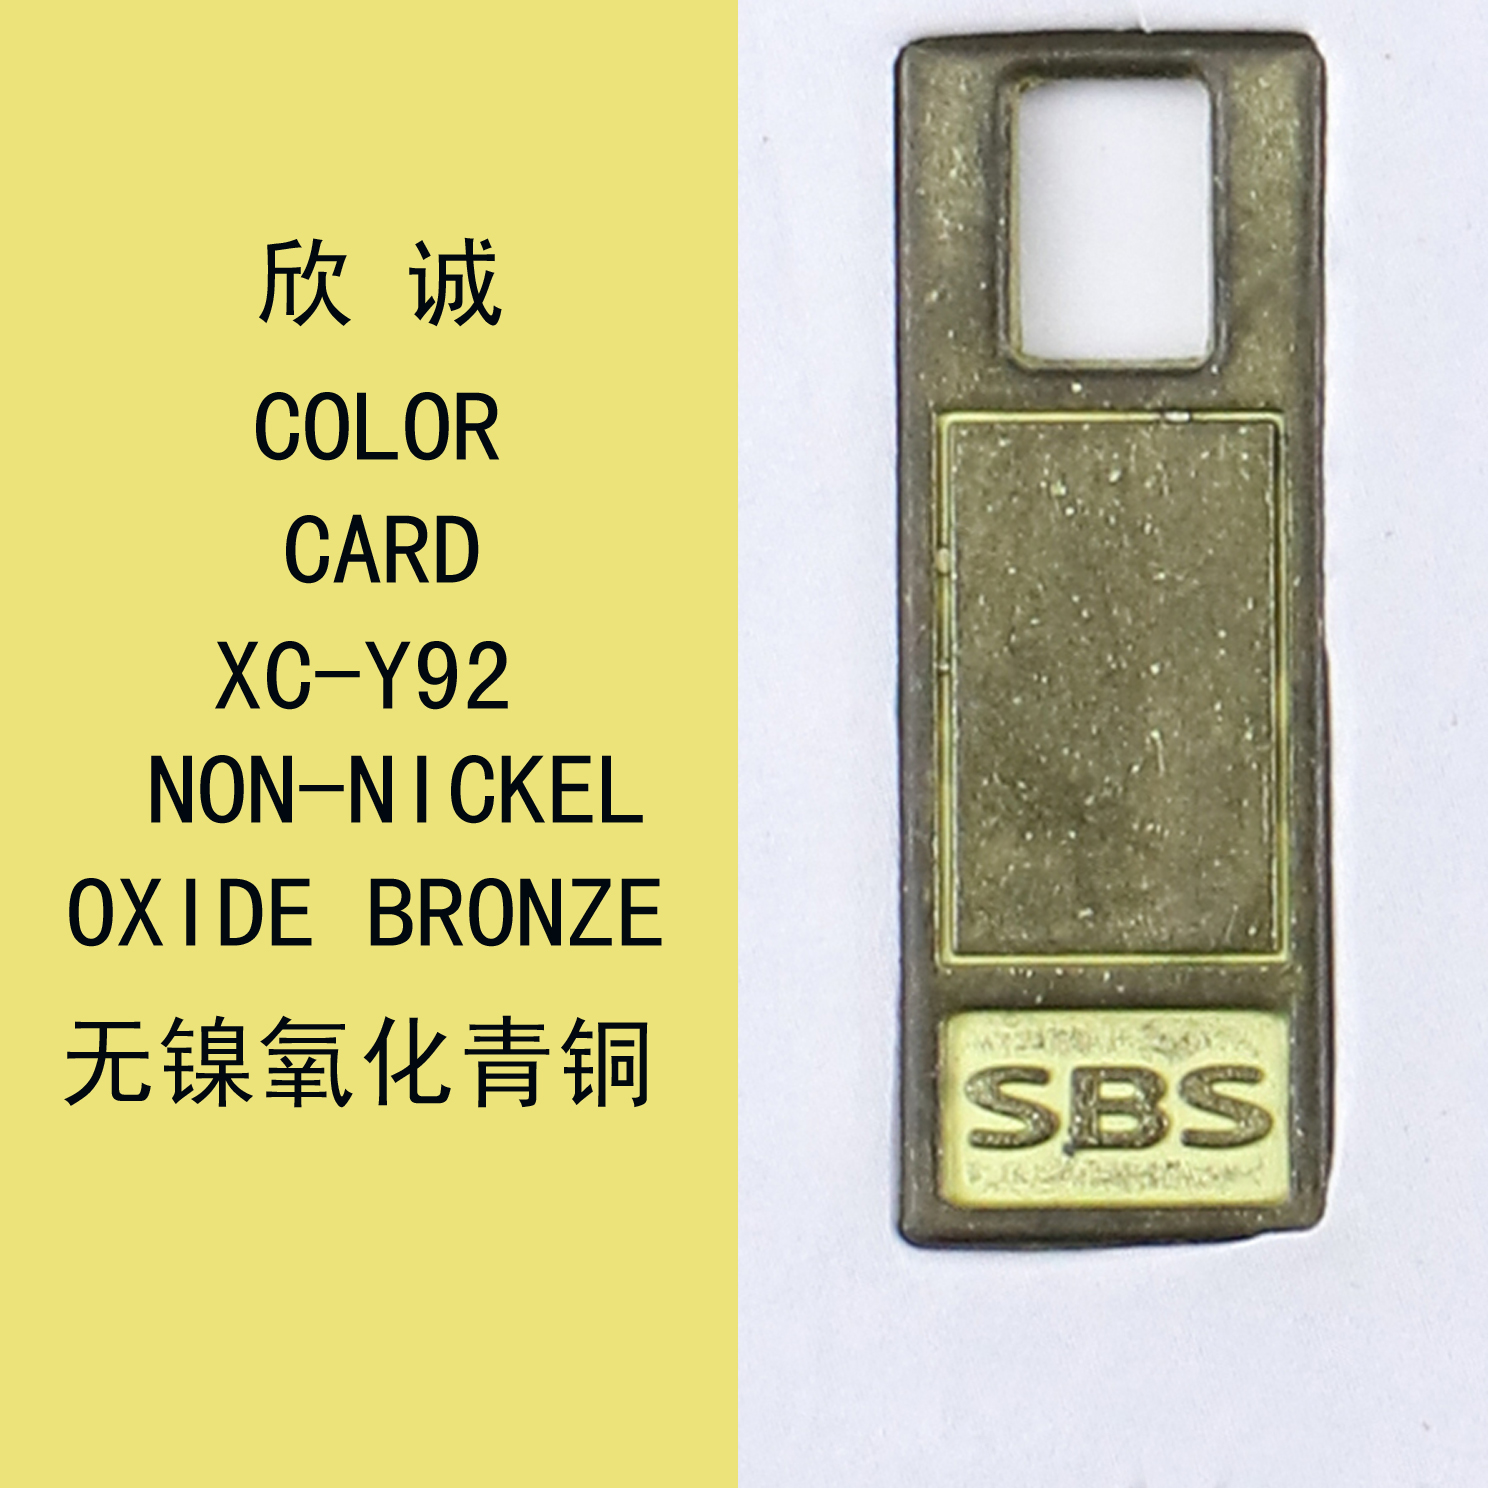 XC-Y92無鎳氧化青銅 